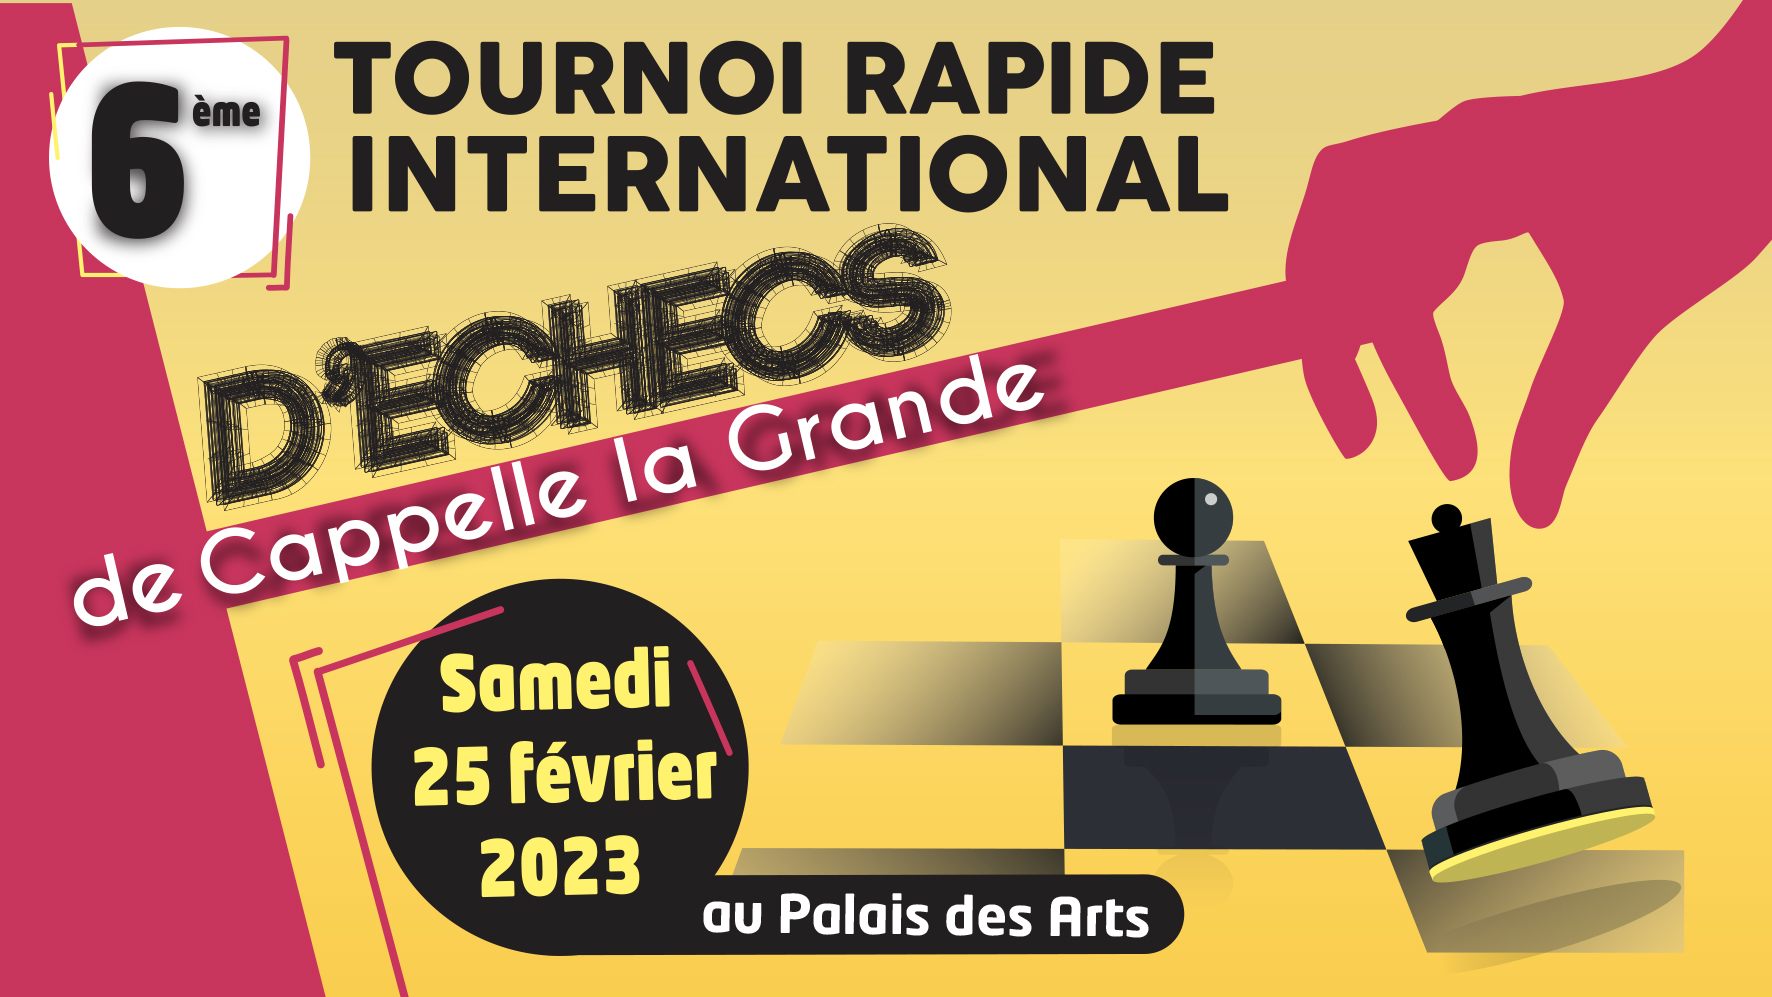 Tournoi rapide international d'échecs de Cappelle la Grande